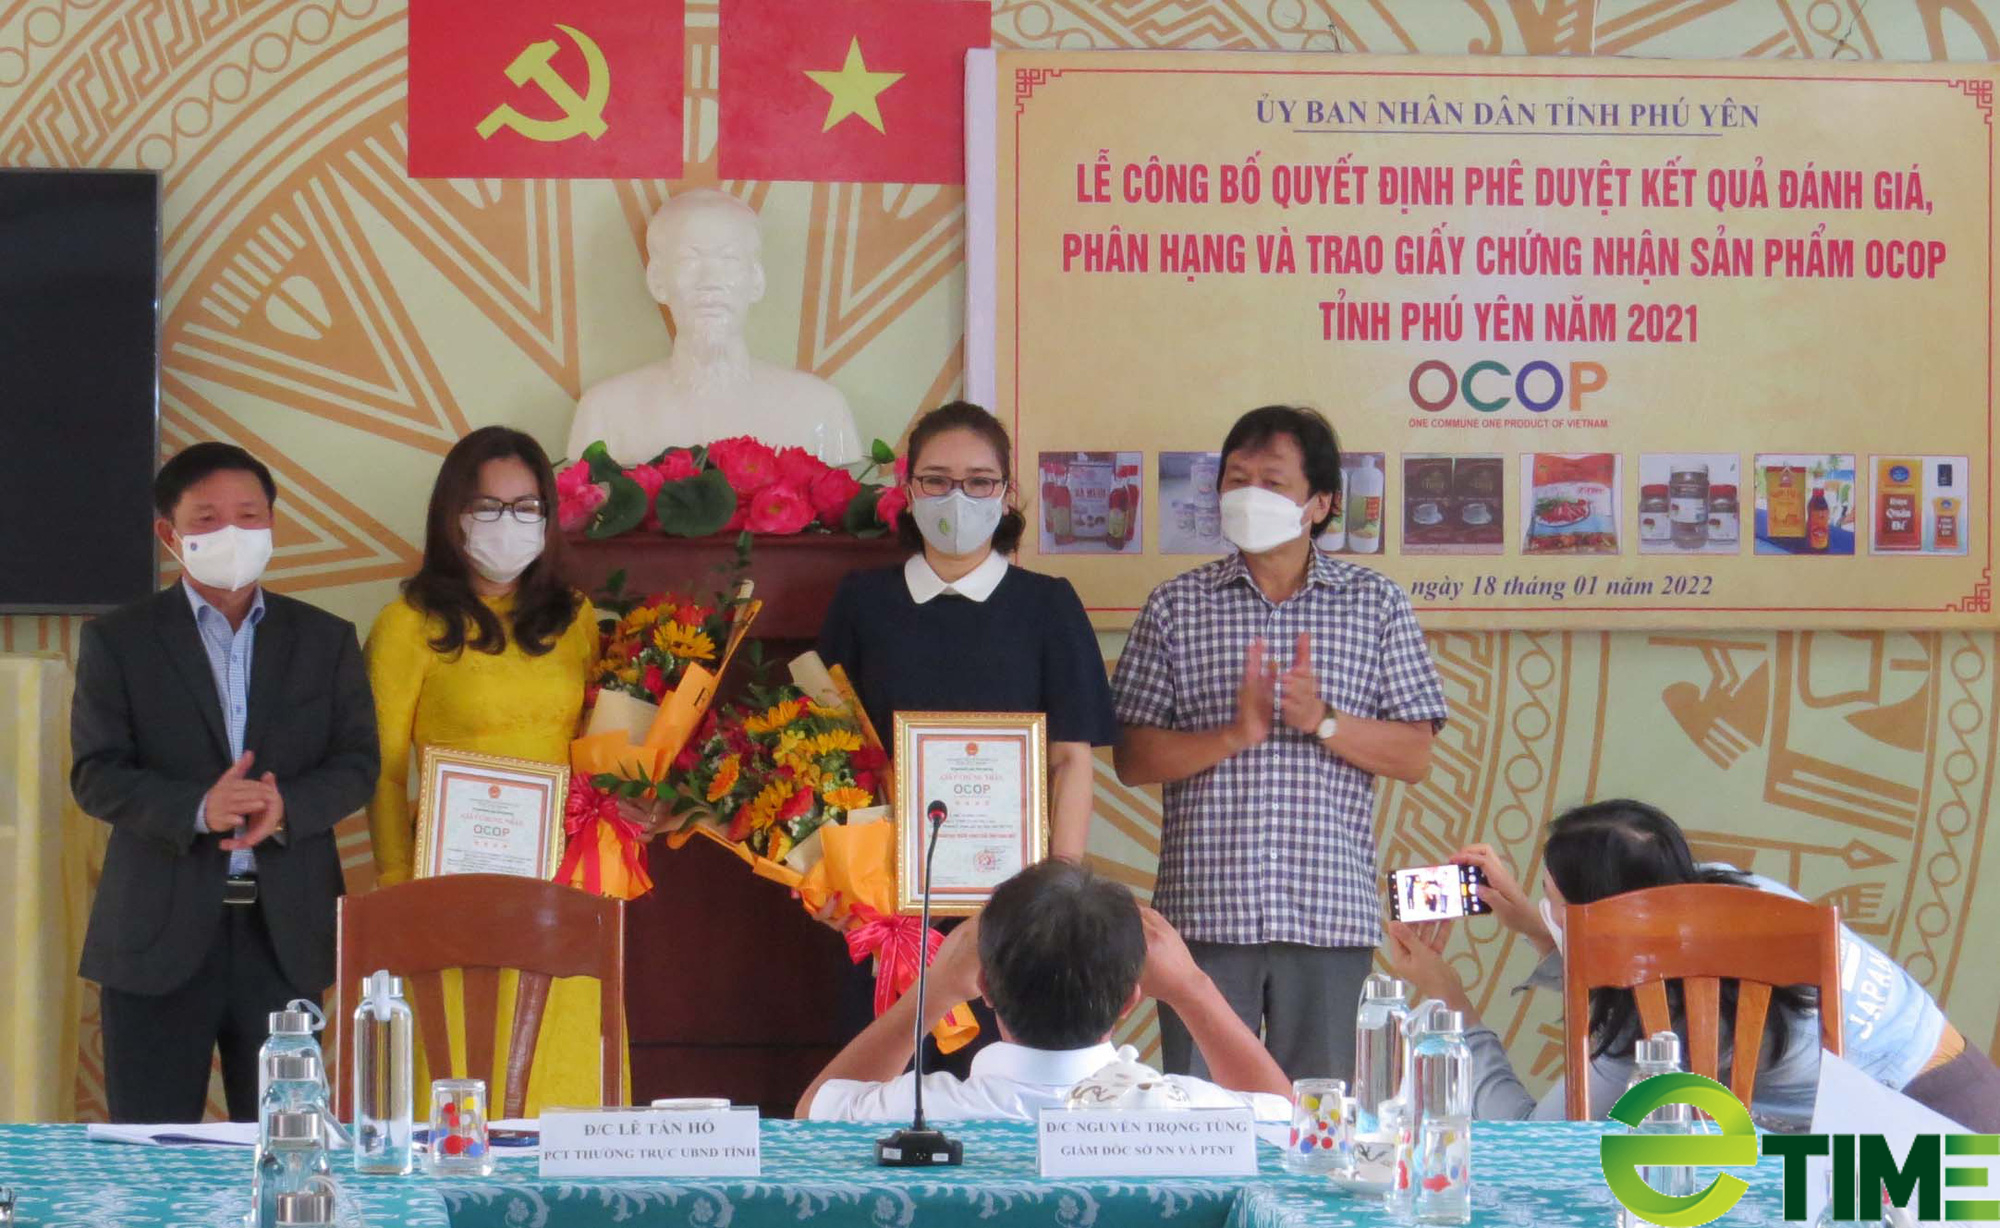 Trao chứng nhận 9 sản phẩm OCOP tỉnh Phú Yên năm 2021 - Ảnh 1.